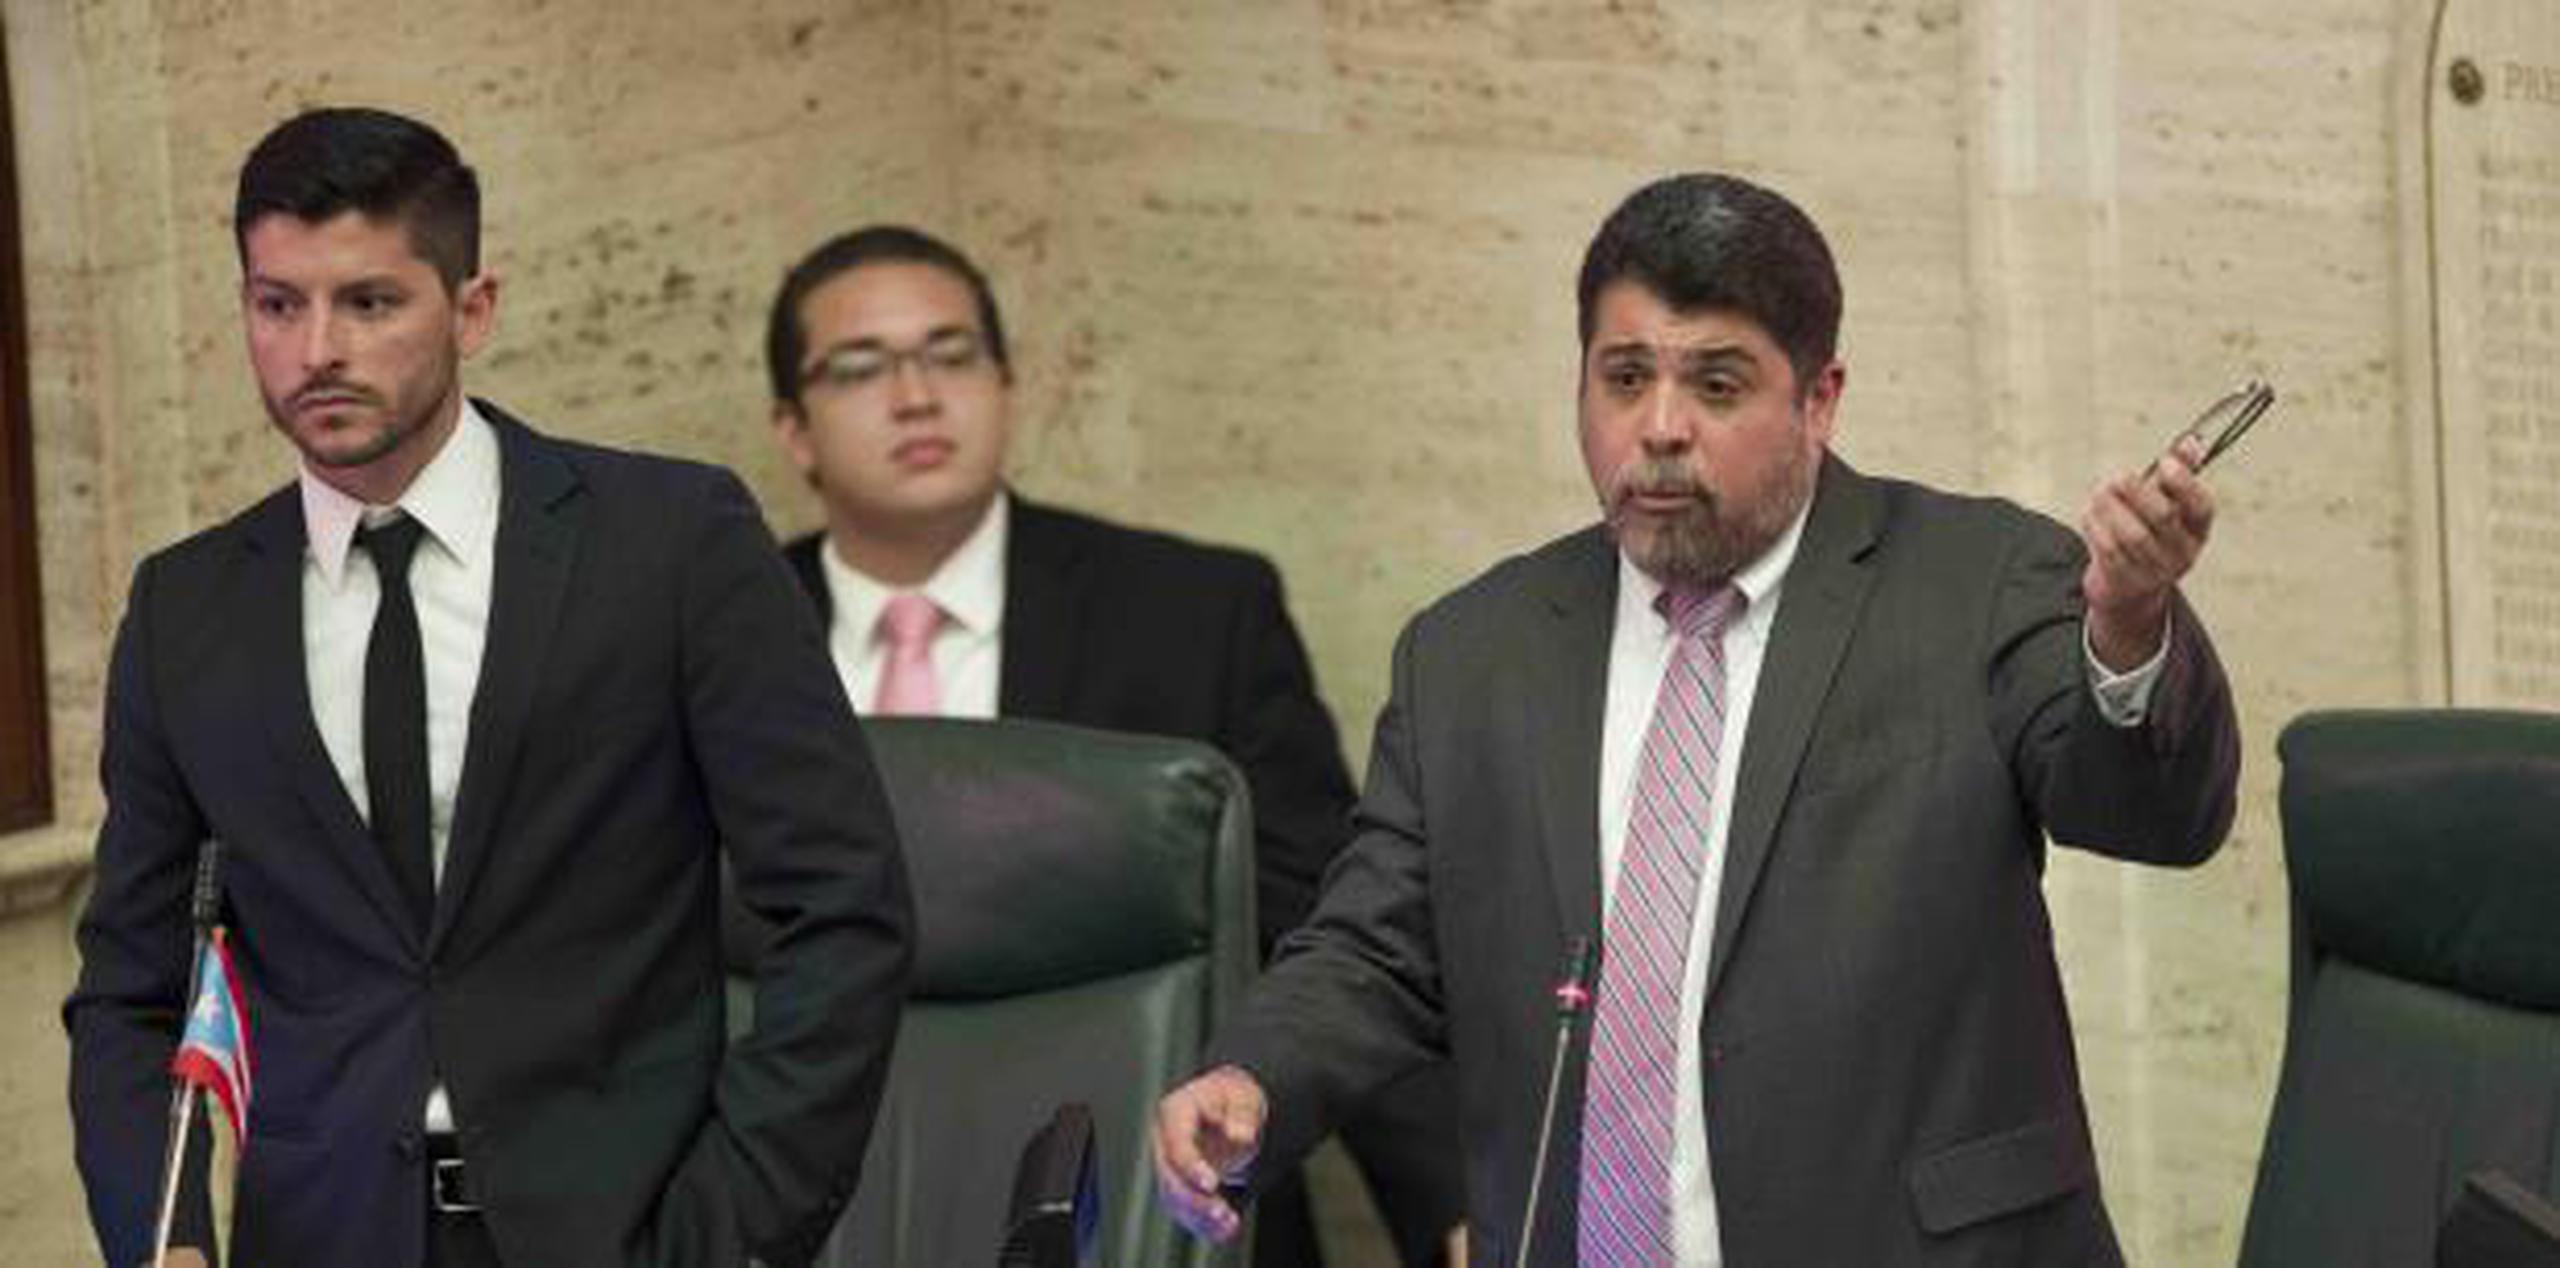 Manuel Natal y Luis Vega Ramos son dos de los representantes que hacen la denuncia. (Archivo)